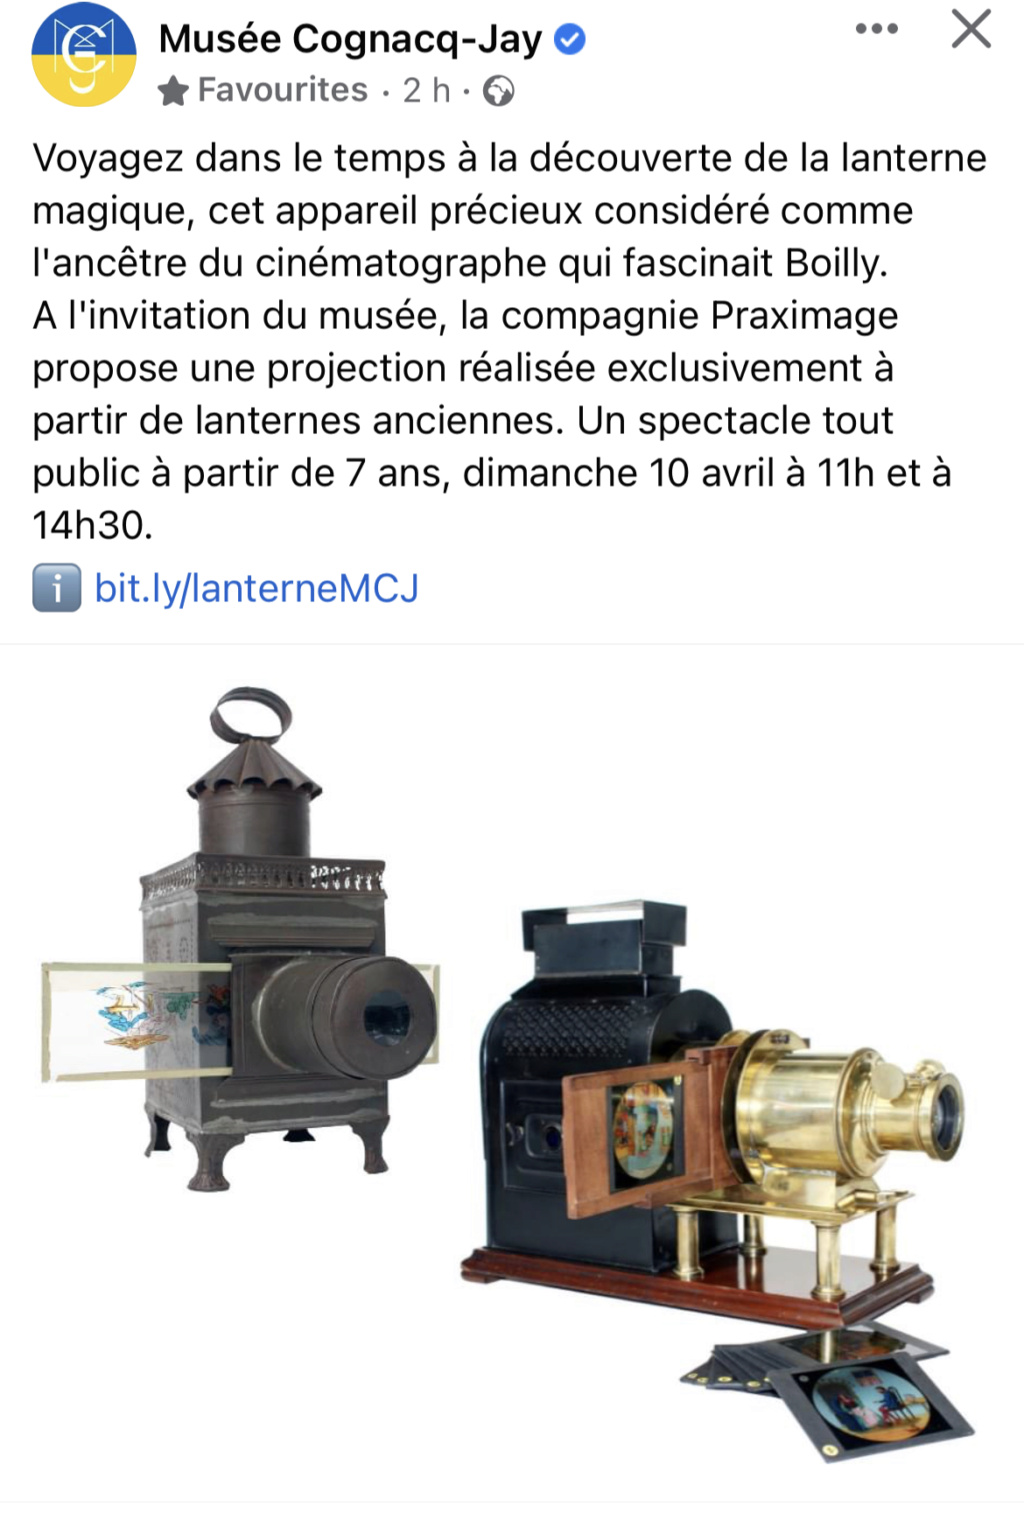 Exposition au musée Cognacq-Jay : Boilly, chroniques parisiennes (du 16/02 au 26/06/2022) 73a93910